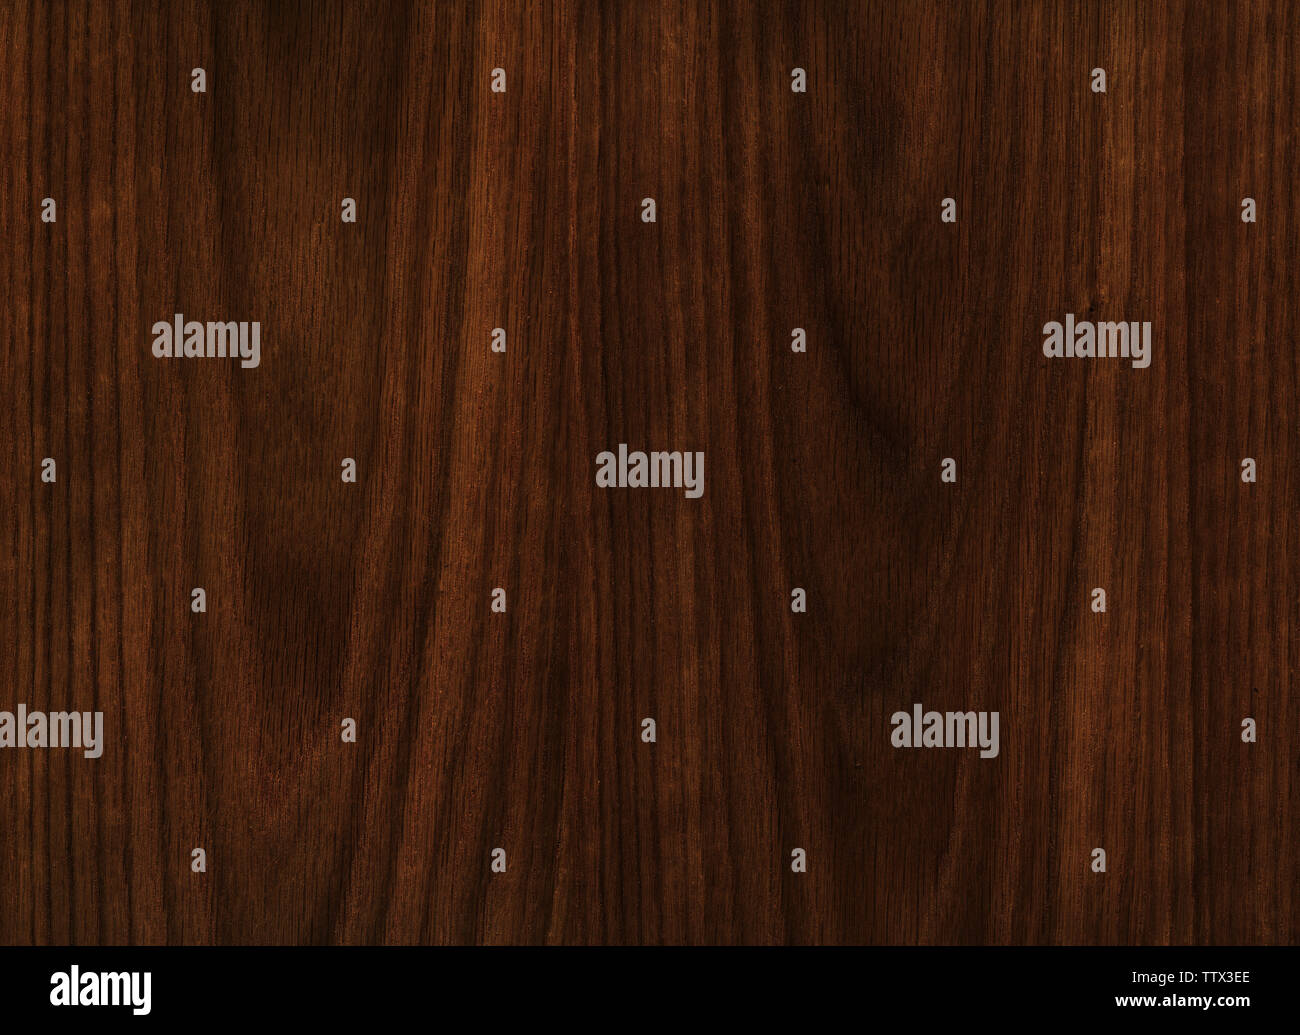 dark oak wood texture Stock Photo - Alamy